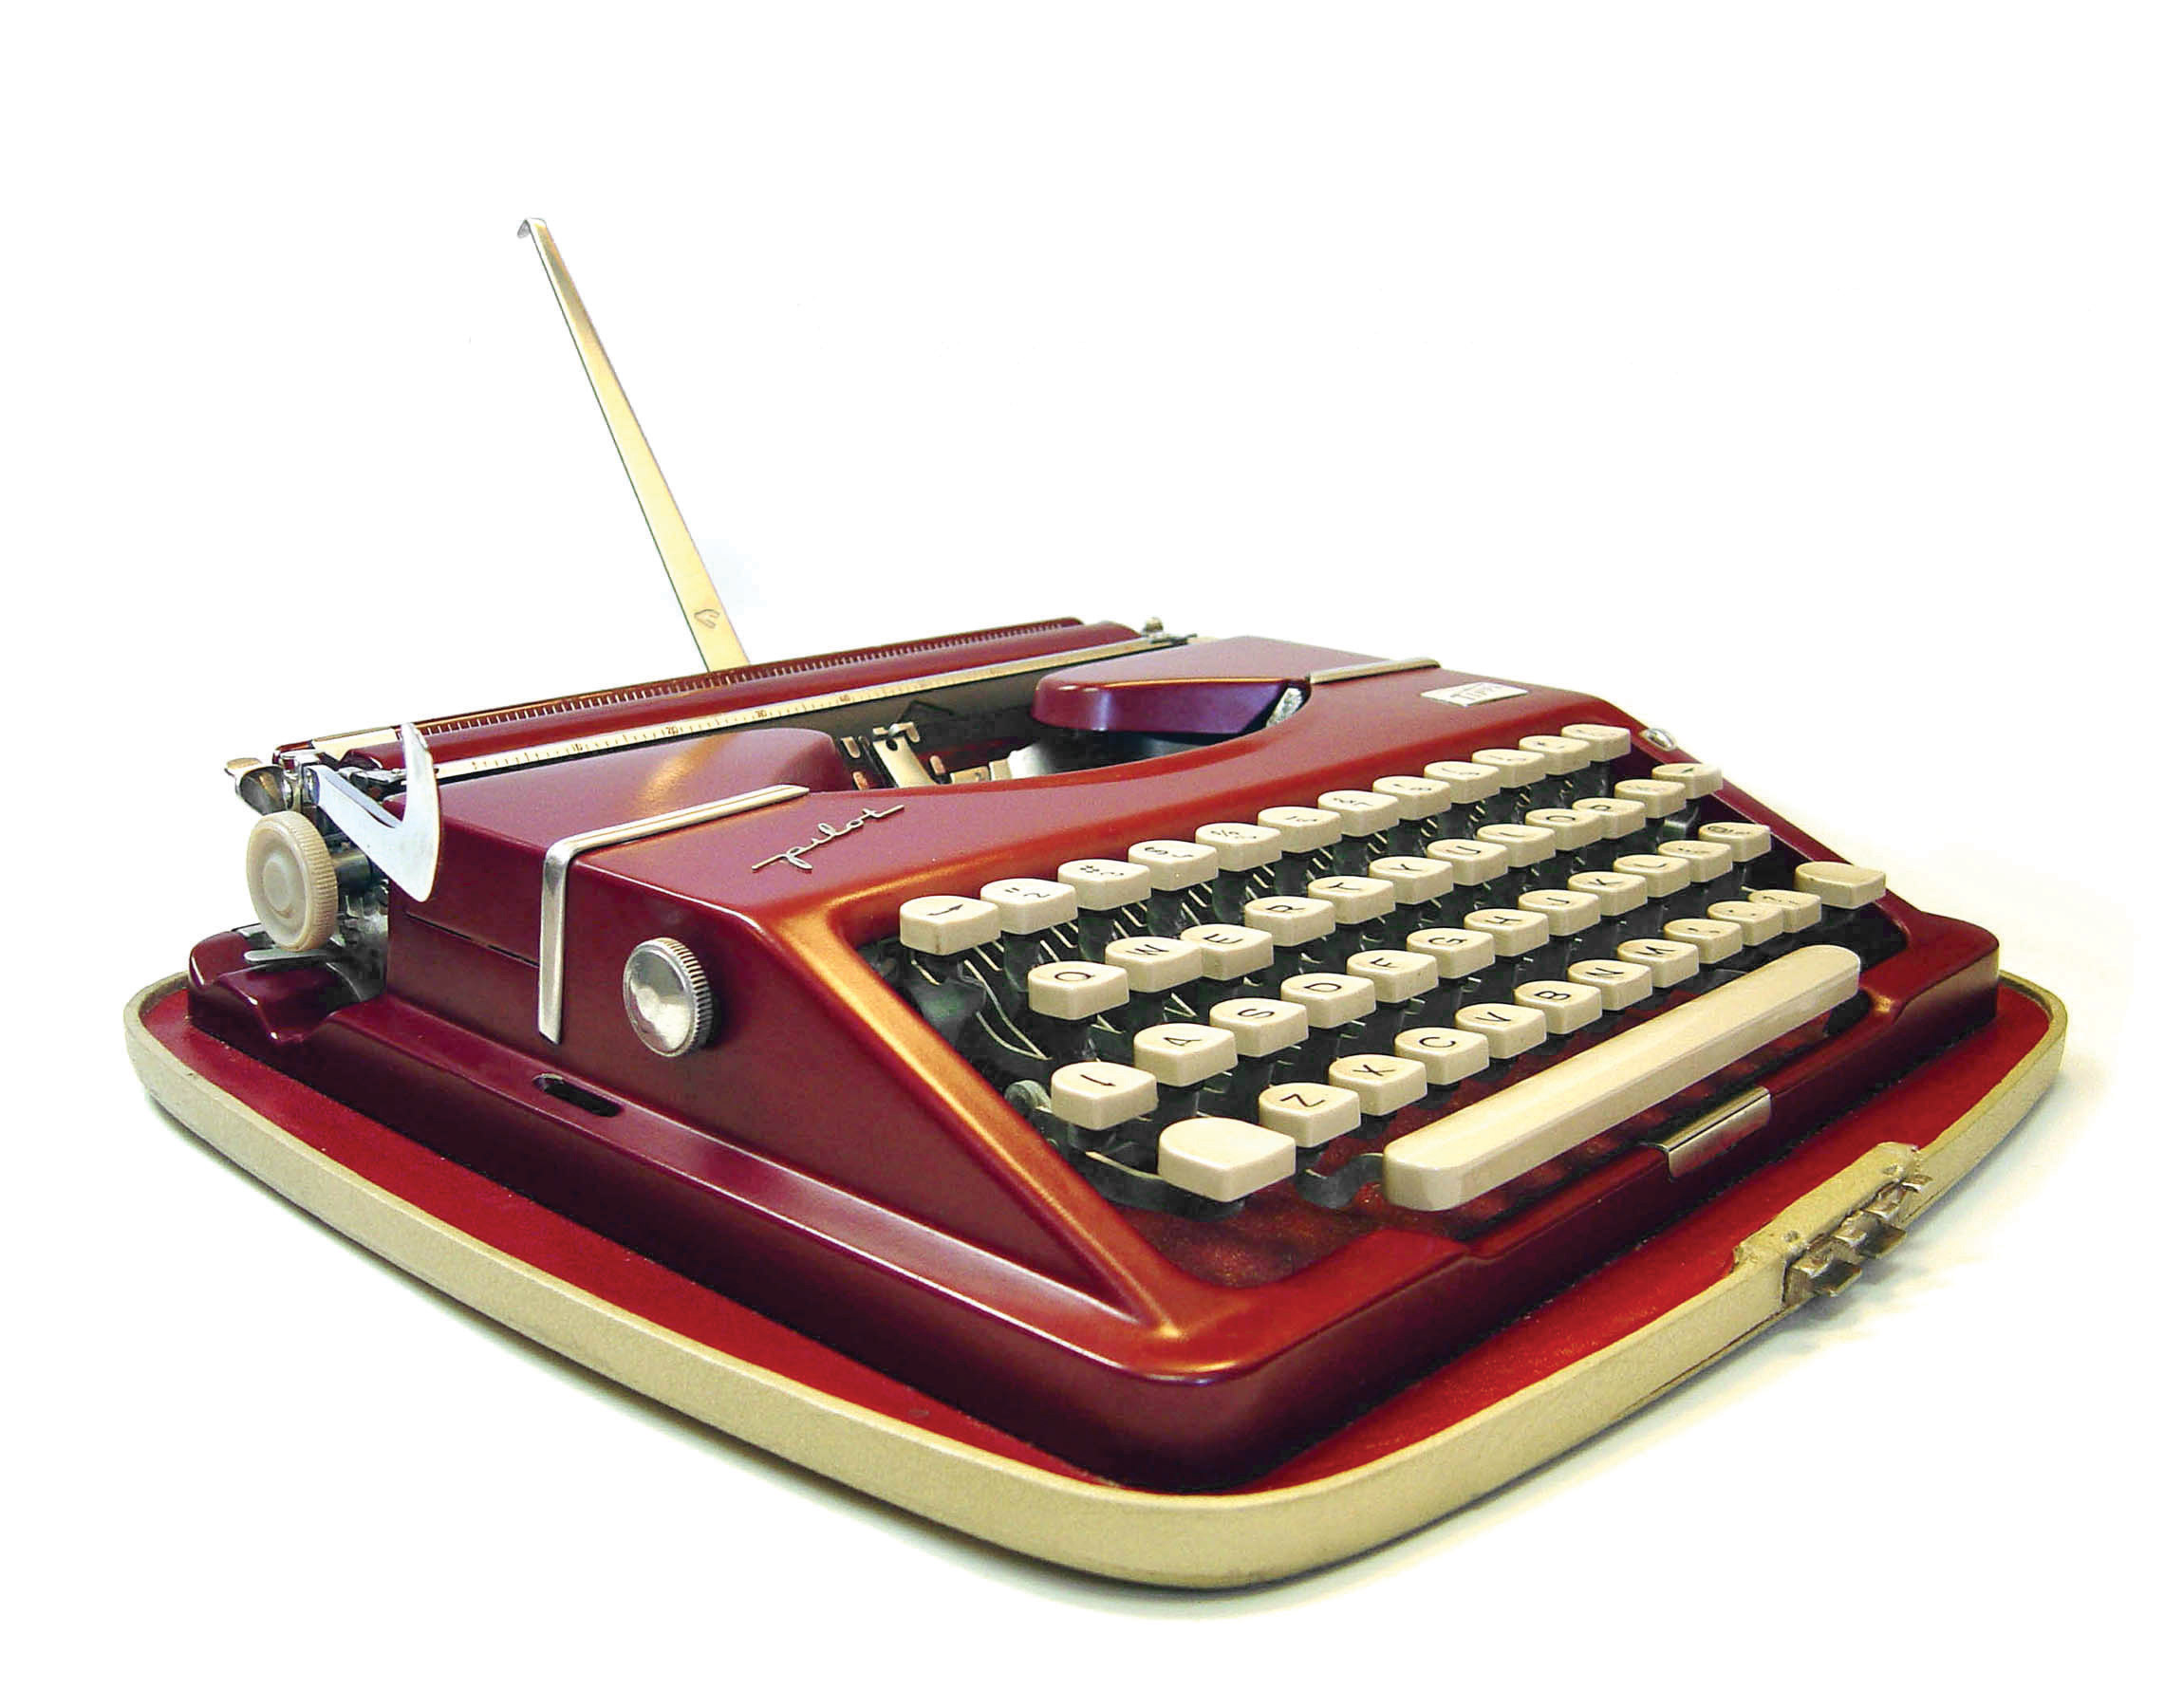 Gossen Tippa Pilot typewriter